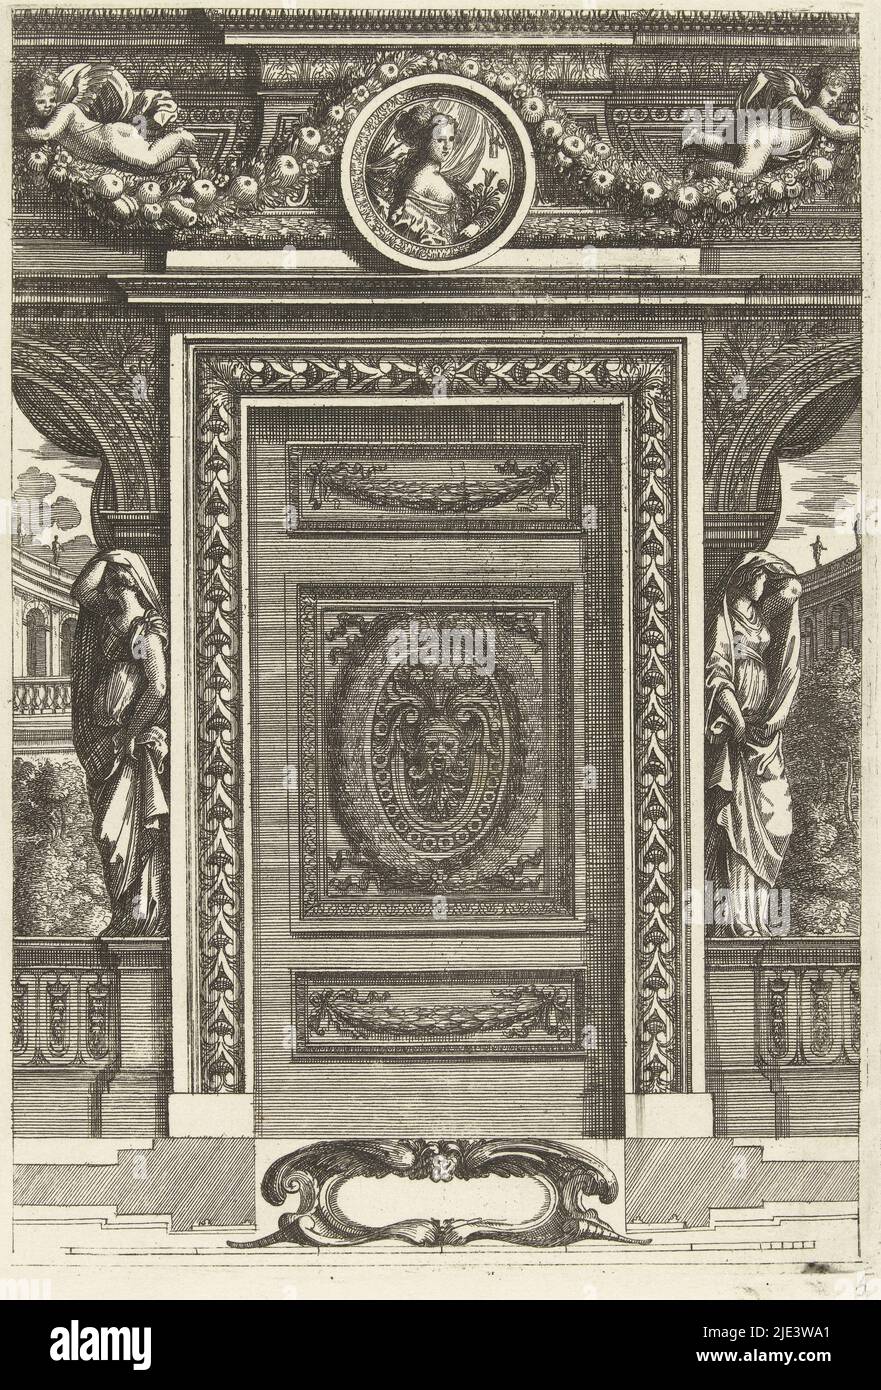 De chaque côté de la porte, une femme se tient sur une balustrade devant un panneau en trompe-l'œil avec support et plan en bas de la série de 6 feuilles avec panneaux ornementaux et portes pour les pièces et les alcôves, porte avec panneau avec mascaron Scartaffii overo ornamenti, imprimeur: Franz Ertinger, Jean Lepautre, éditeur: Cornelis Galle (II), Anvers, après 1657 - avant 1678, papier, gravure, h 207 mm × l 144 mm Banque D'Images